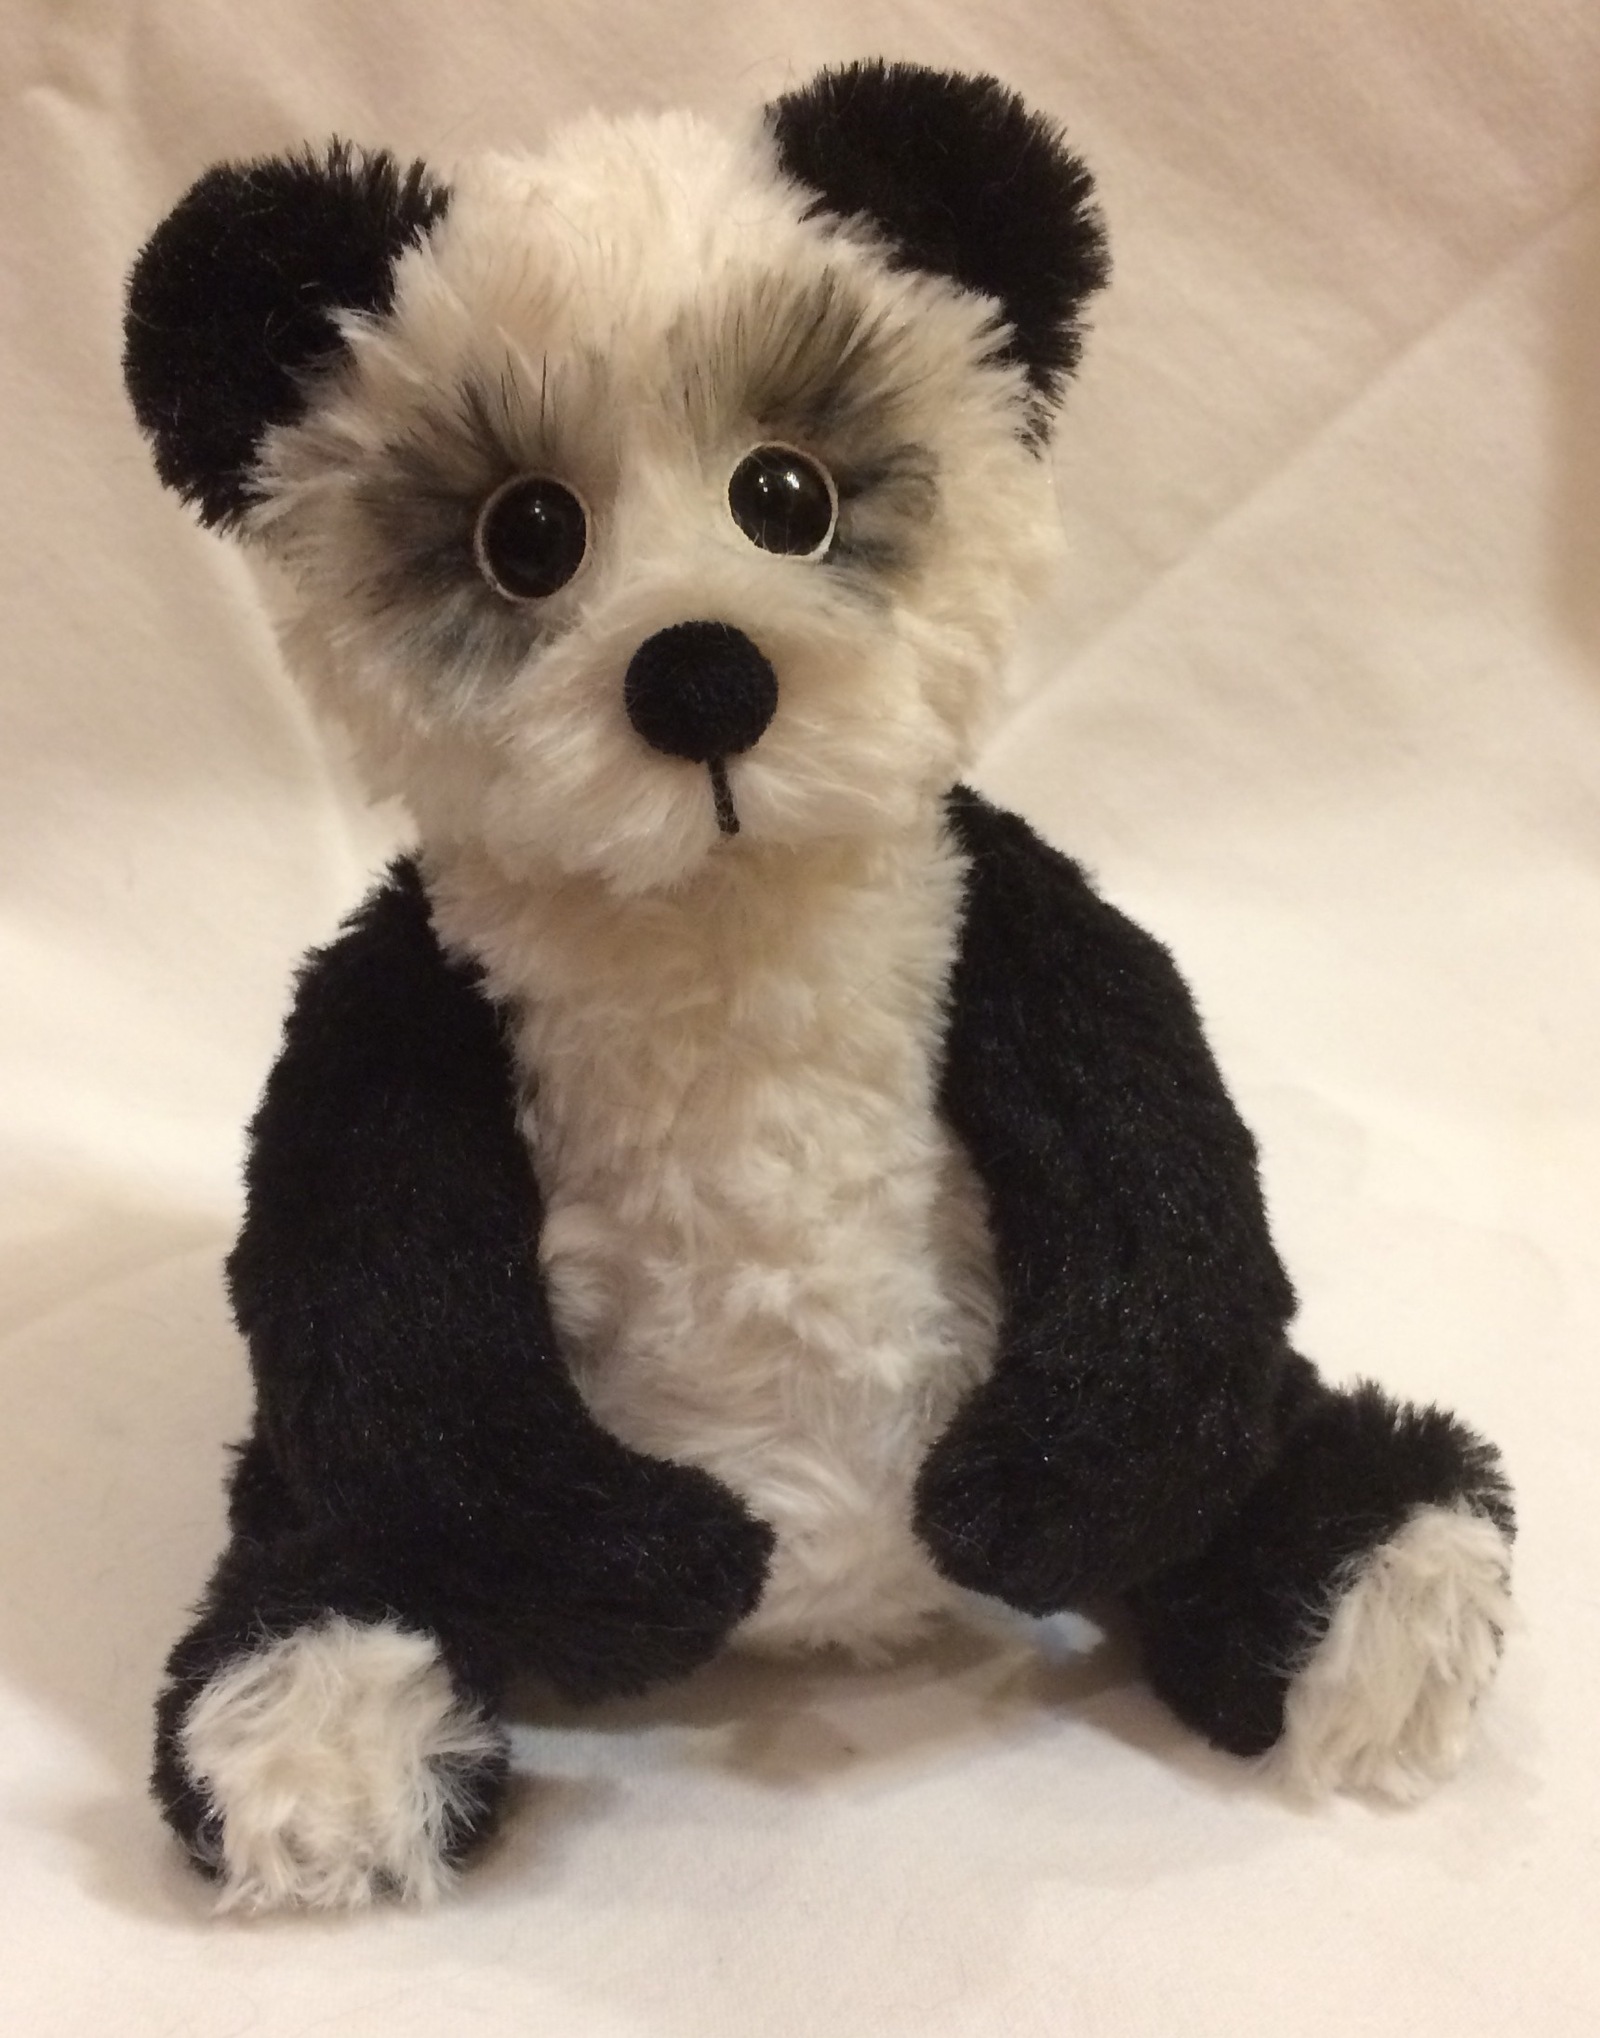 Miracle panda handmade. - My, Soft toy, Author's toy, Handmade, The Bears, Panda, Needlework, , Longpost